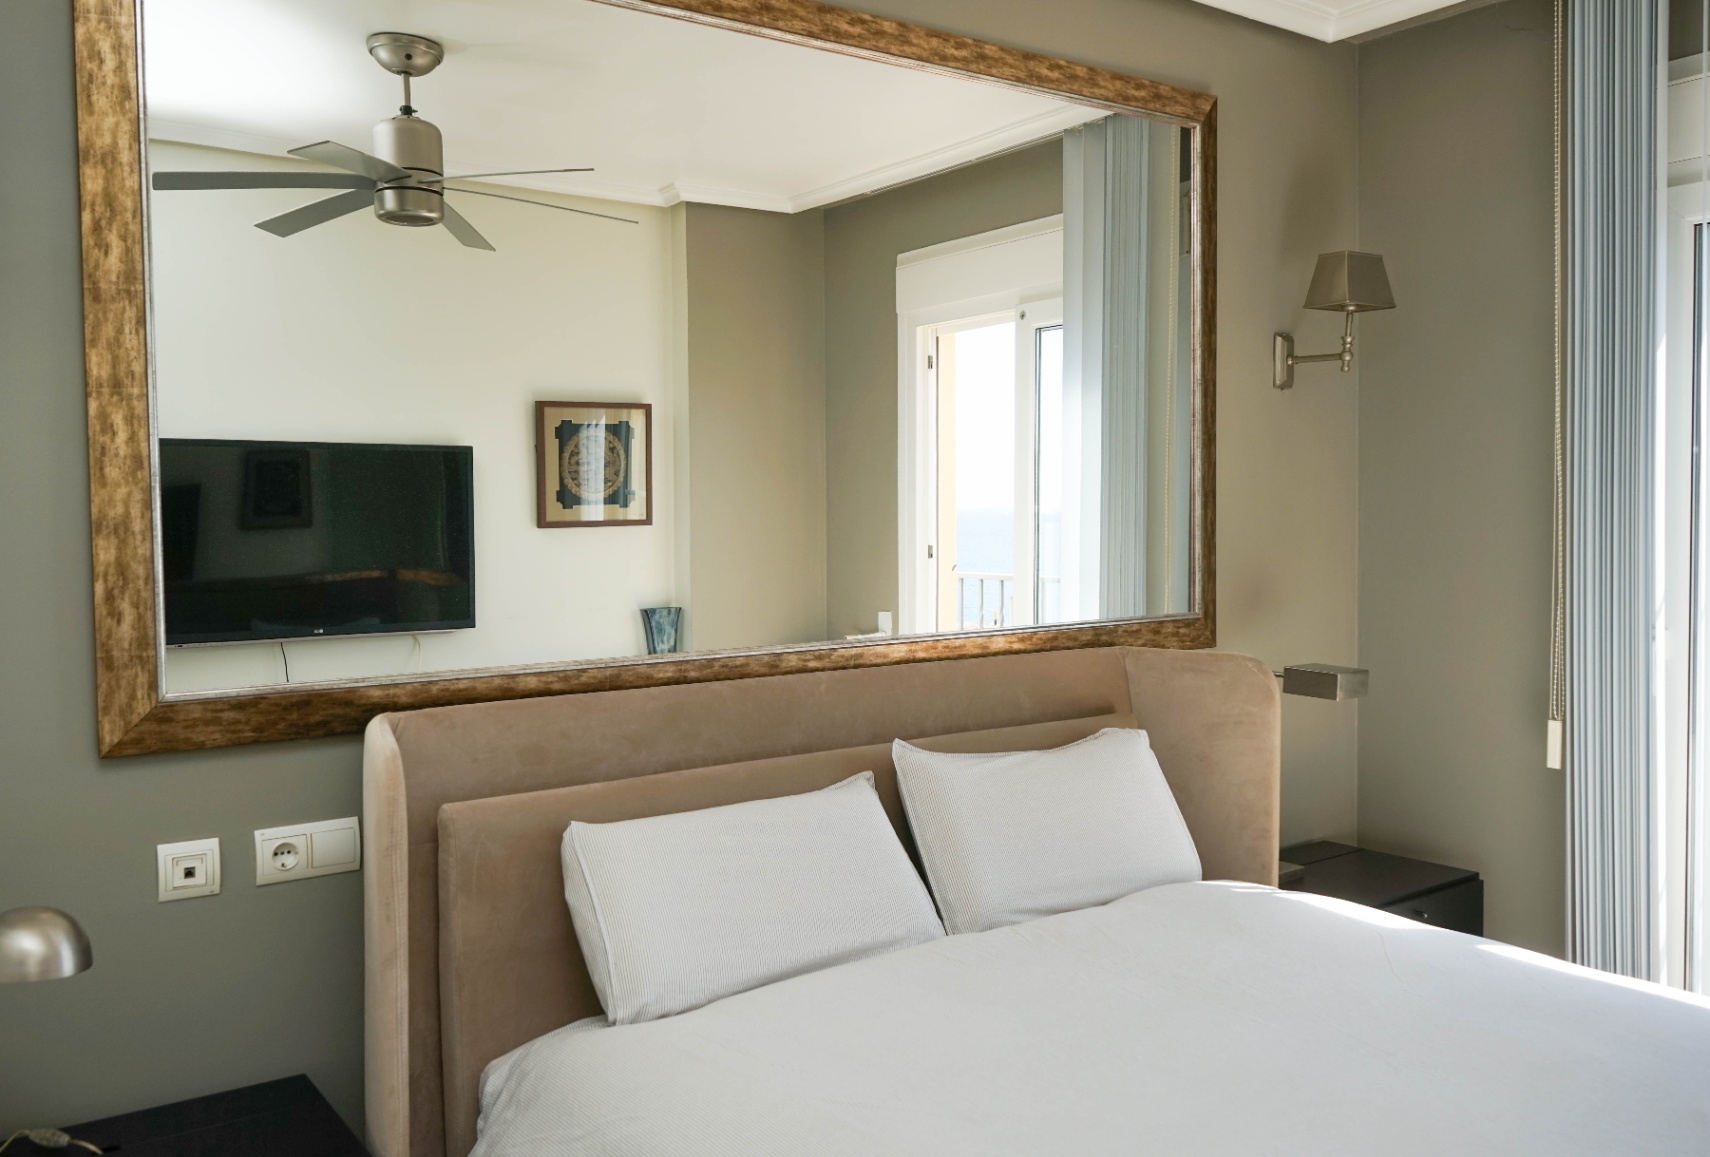 Appartement de luxe à Altea avec vue panoramique sur la mer : découvrez votre maison idéale